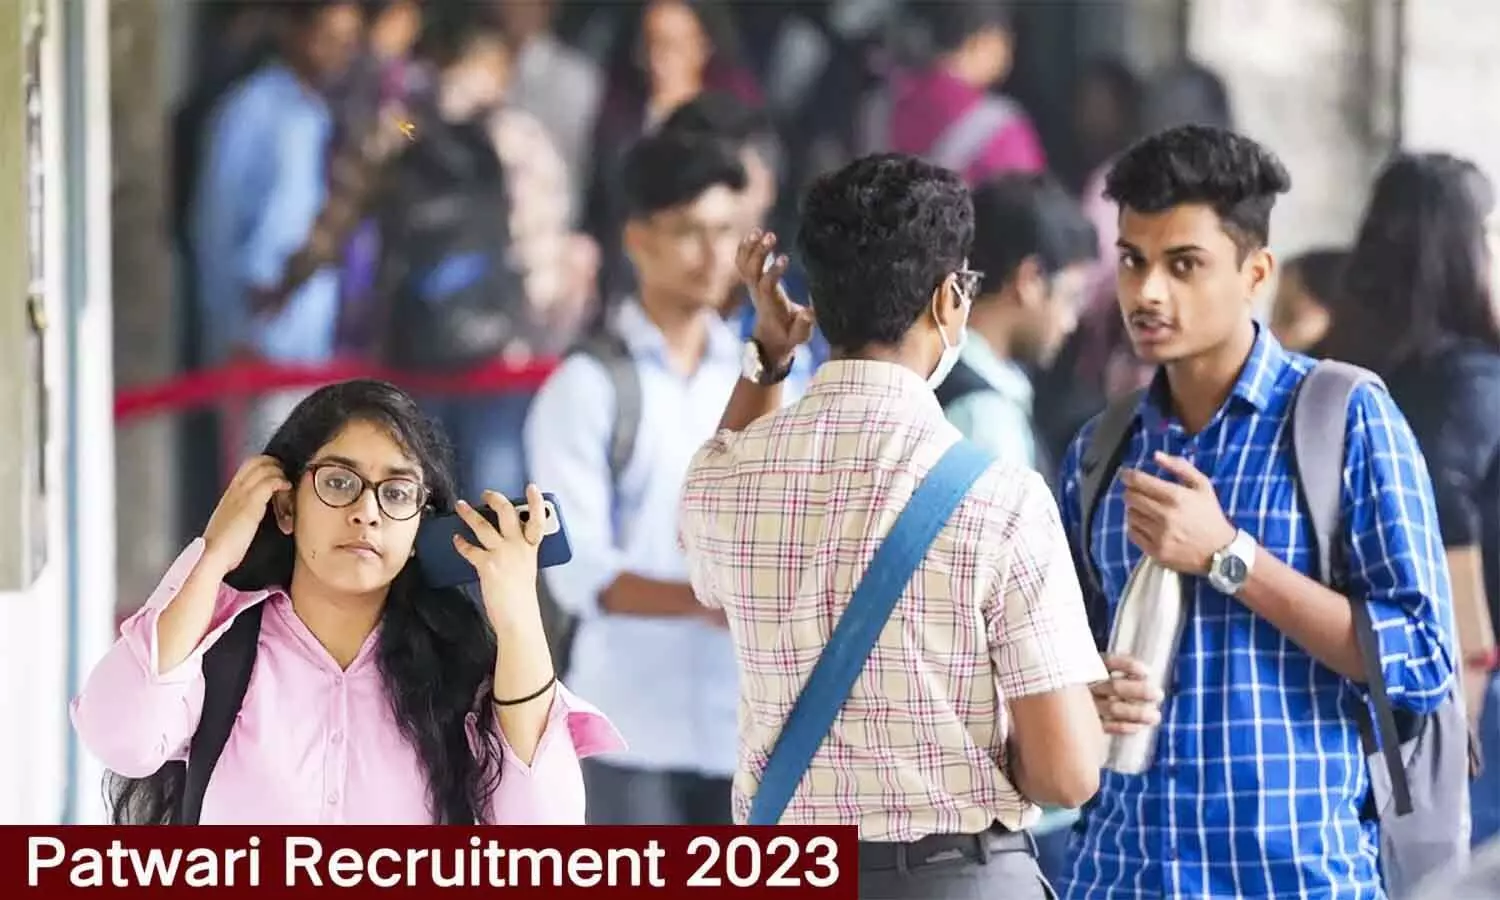 Patwari Recruitment 2023: राजस्व और वन विभाग में पटवारी के 4 हजार से अधिक पदों पर निकली वैकेंसी, क्वालिफिकेशन व एज लिमिट फटाफट जान लें